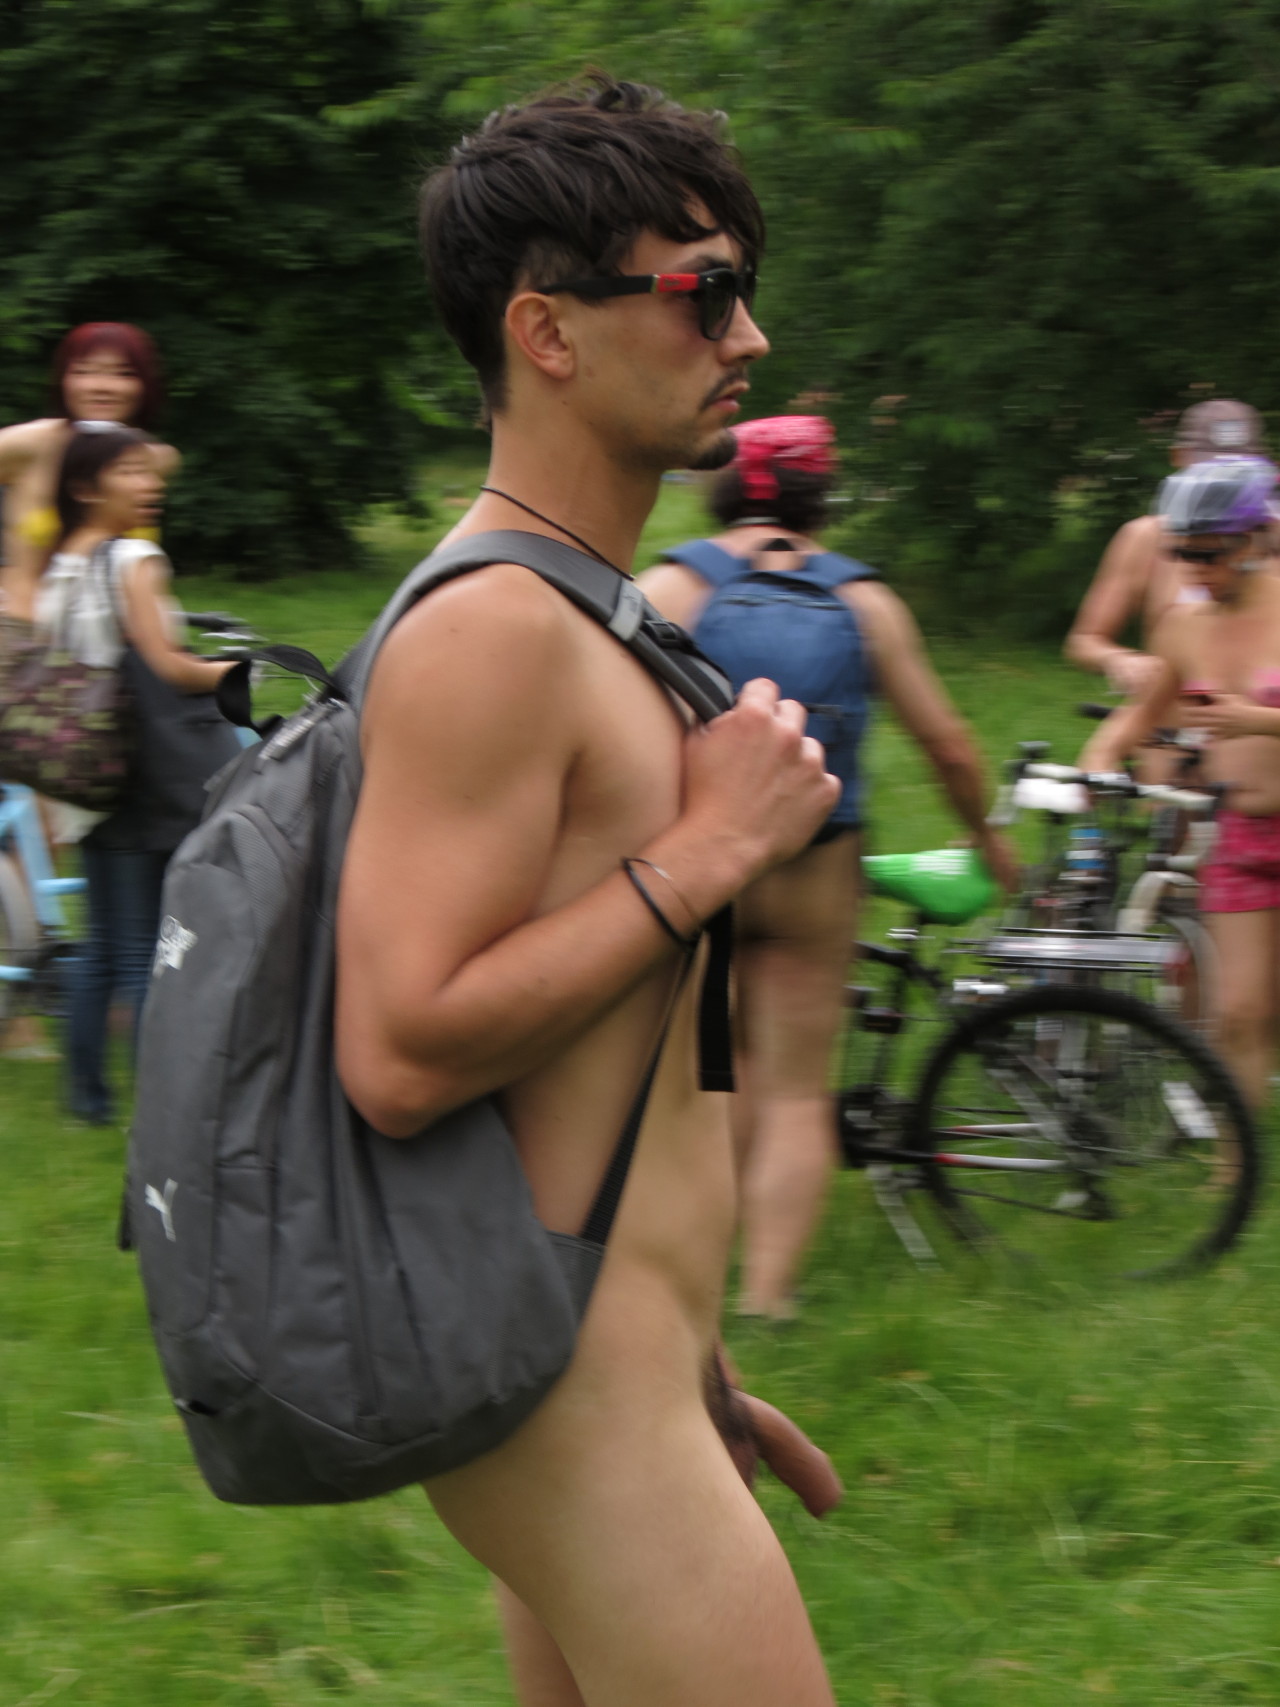 London world naked bike ride erection